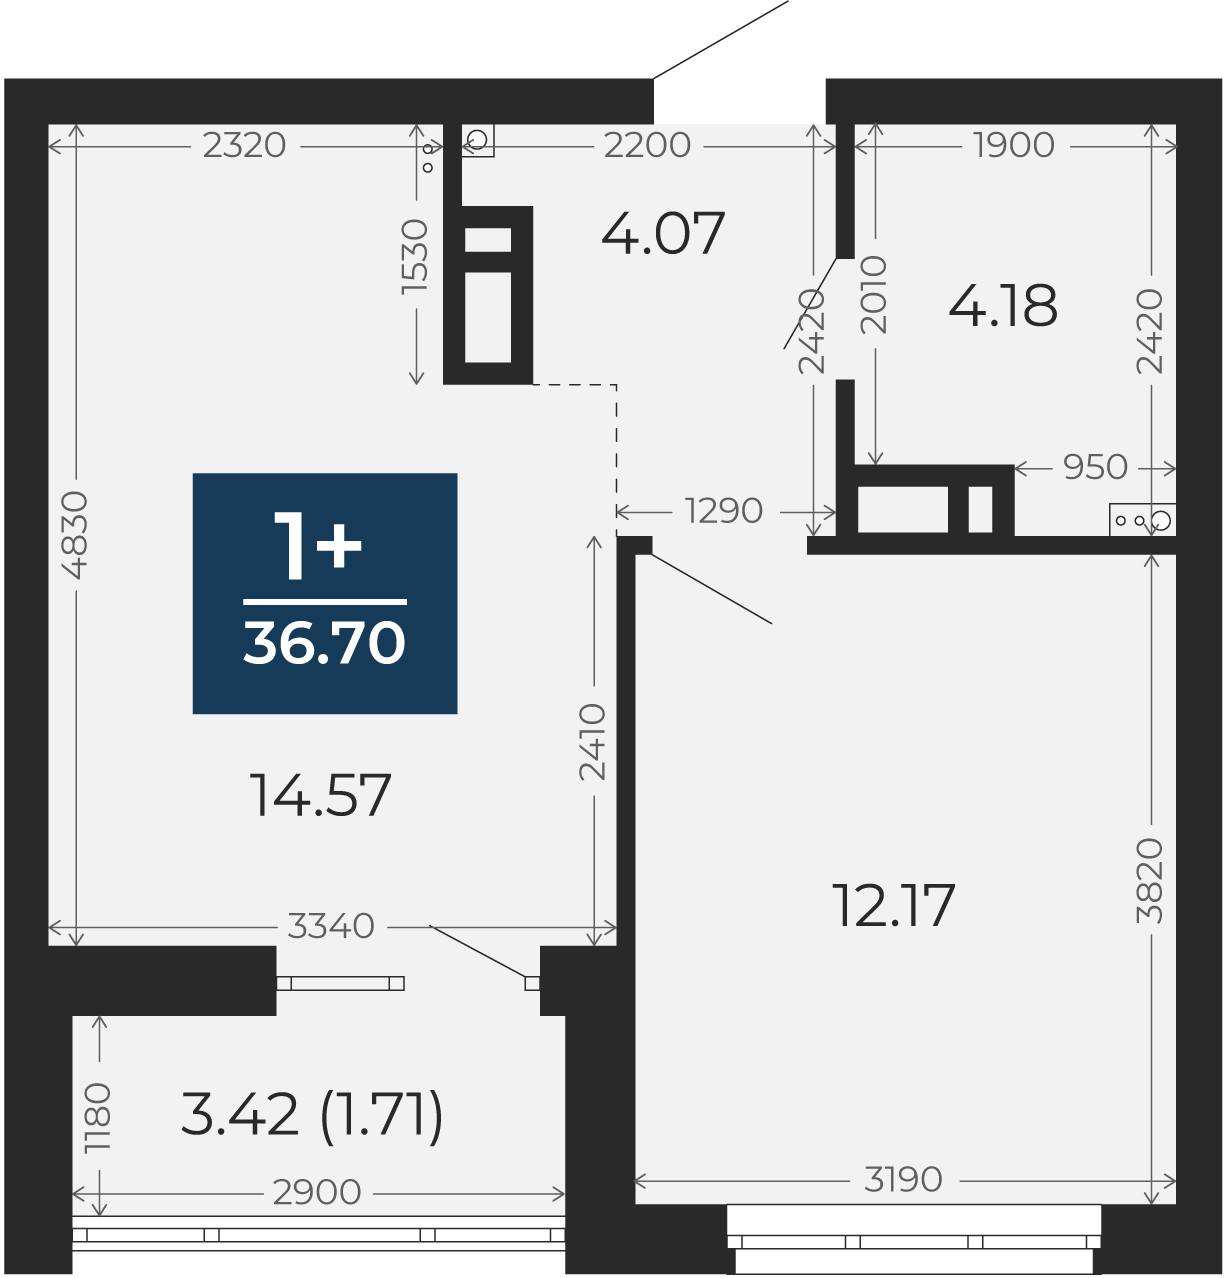 Квартира № 88, 1-комнатная, 36.7 кв. м, 12 этаж